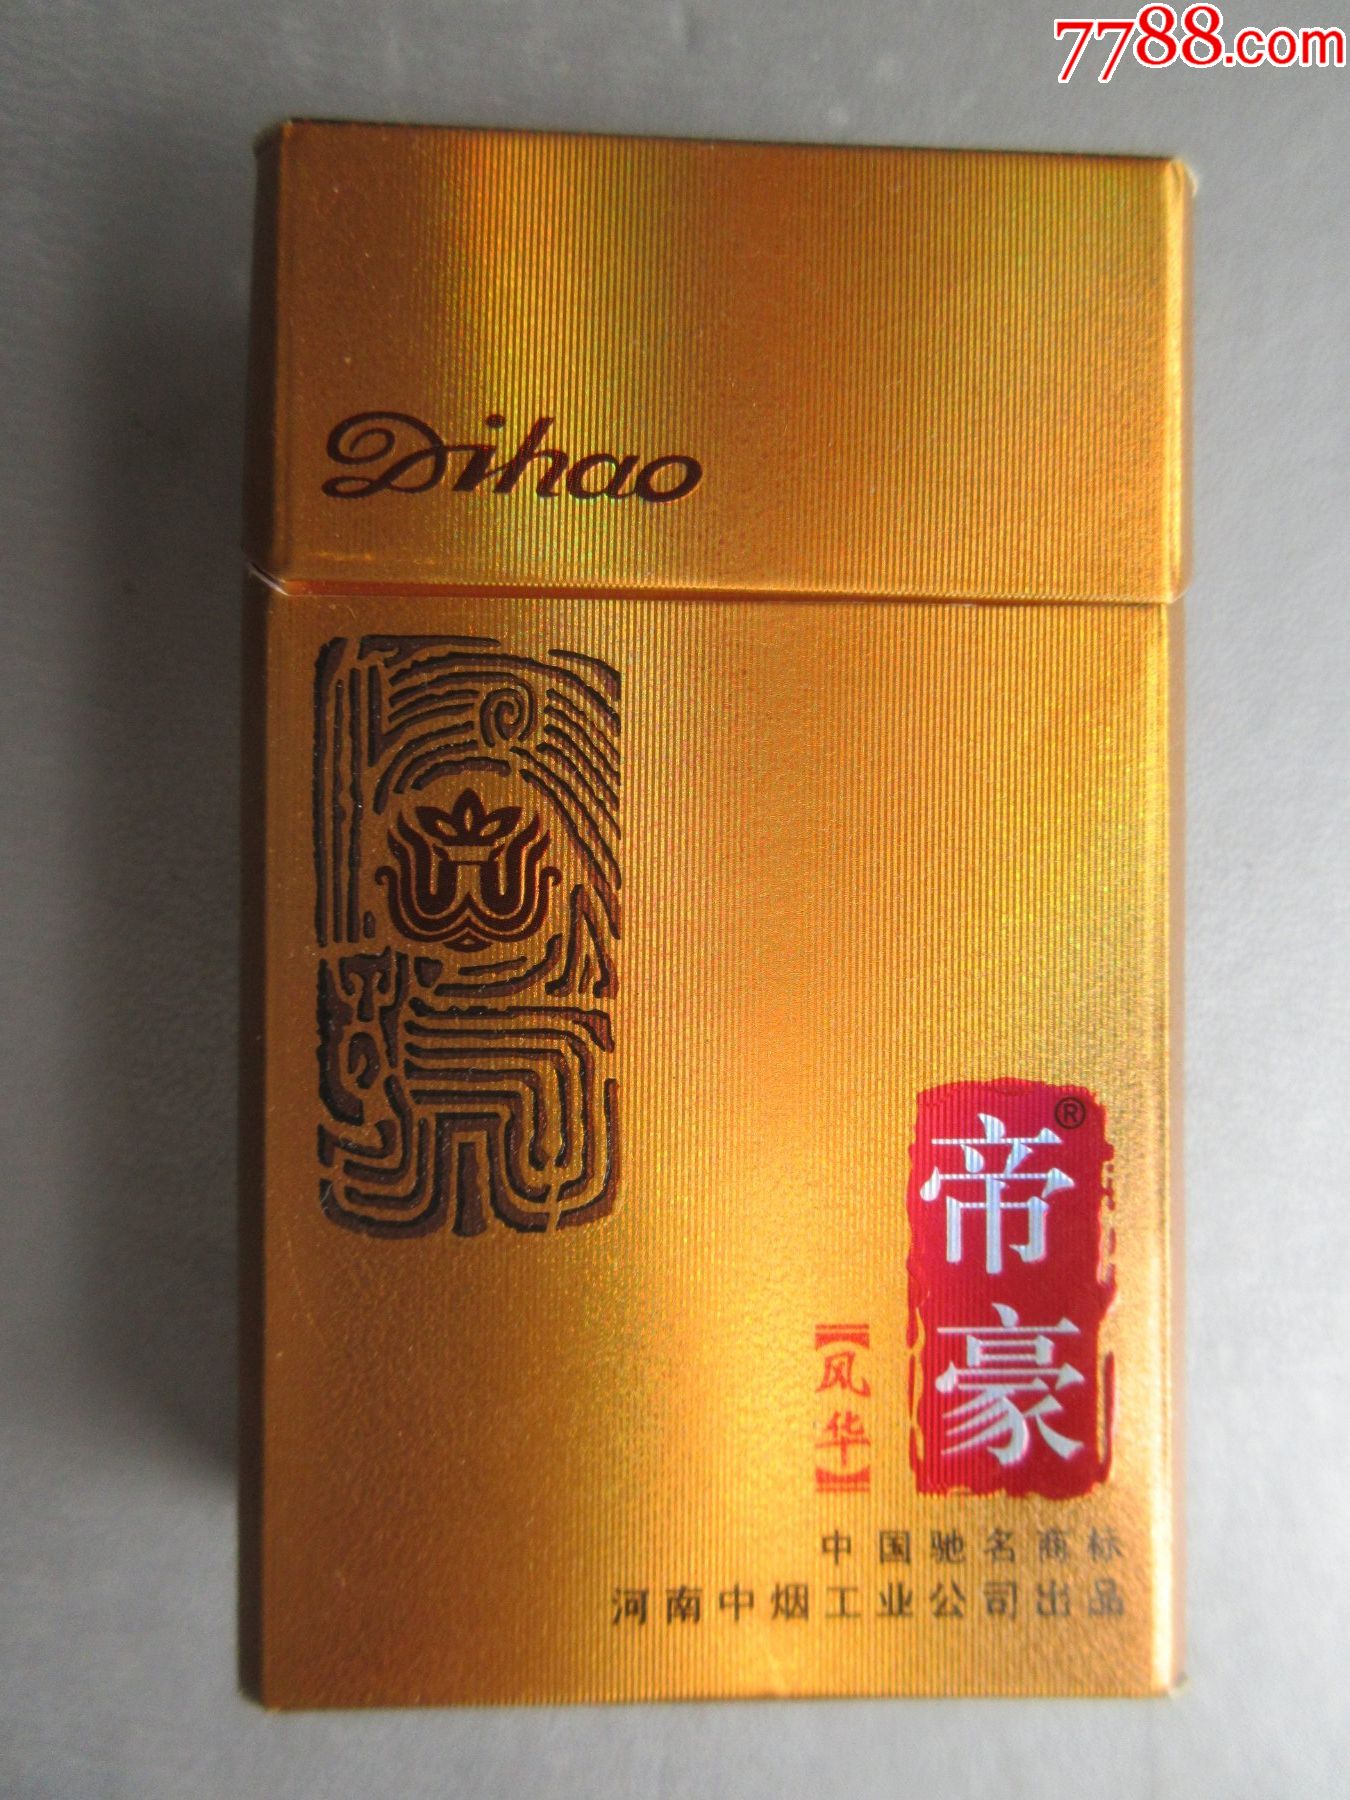 10元帝豪香烟新包装图片